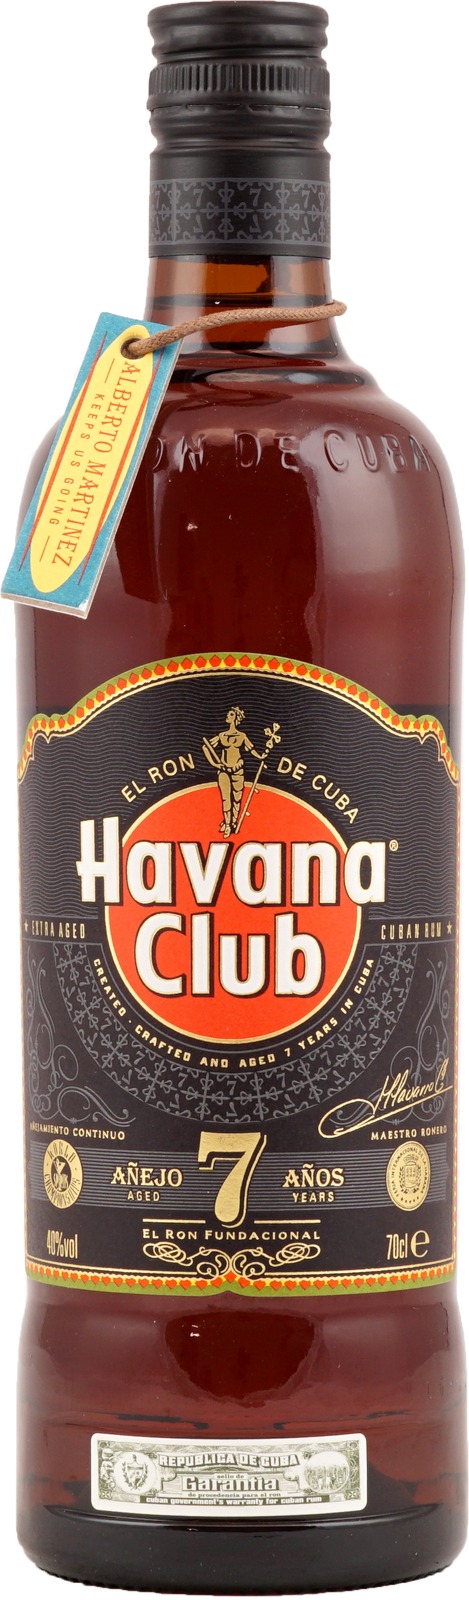 Havana Club Añejo (7 Jahre) 0,7 Liter 40% Vol., kubanis